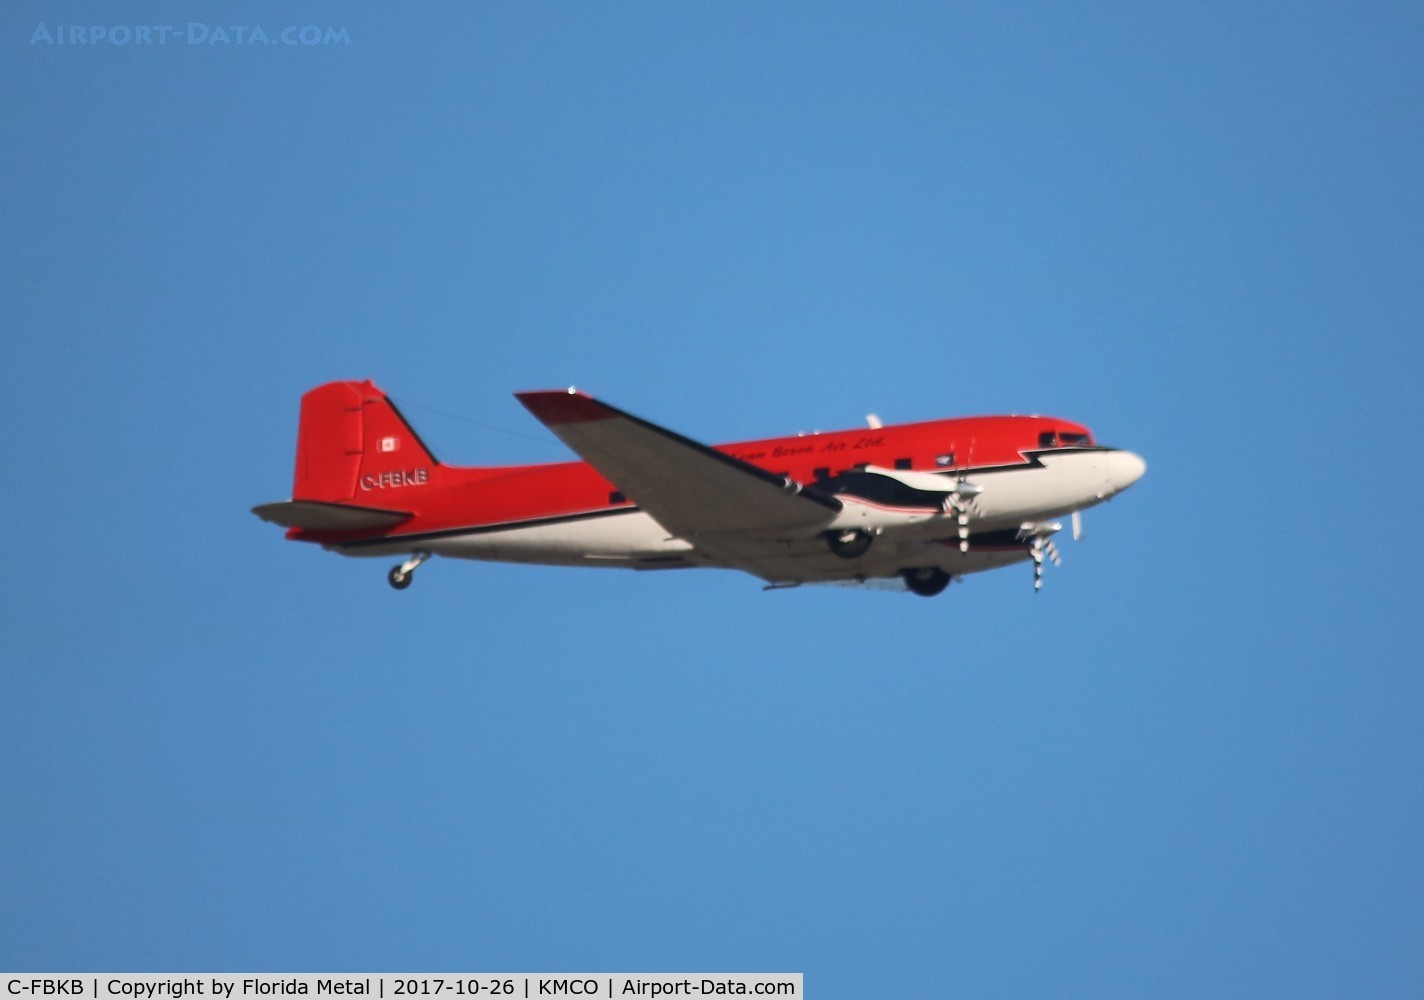 C-FBKB, Basler BT-67 C/N 25616, BT-67 (turboprop DC-3)